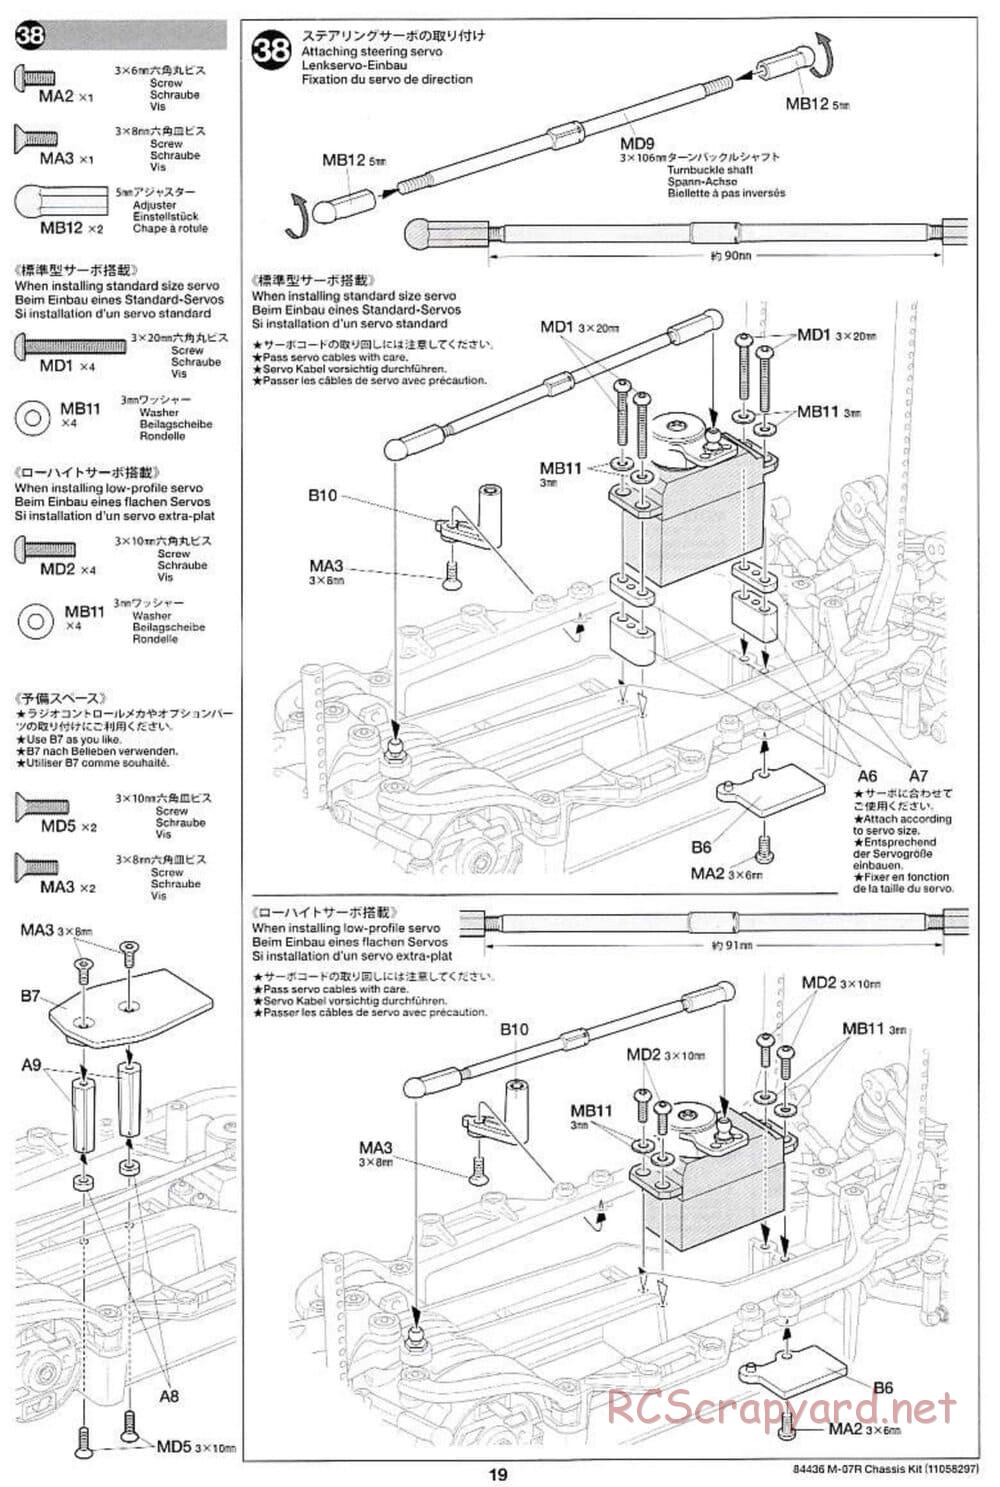 Tamiya - M-07R Chassis - Manual - Page 19